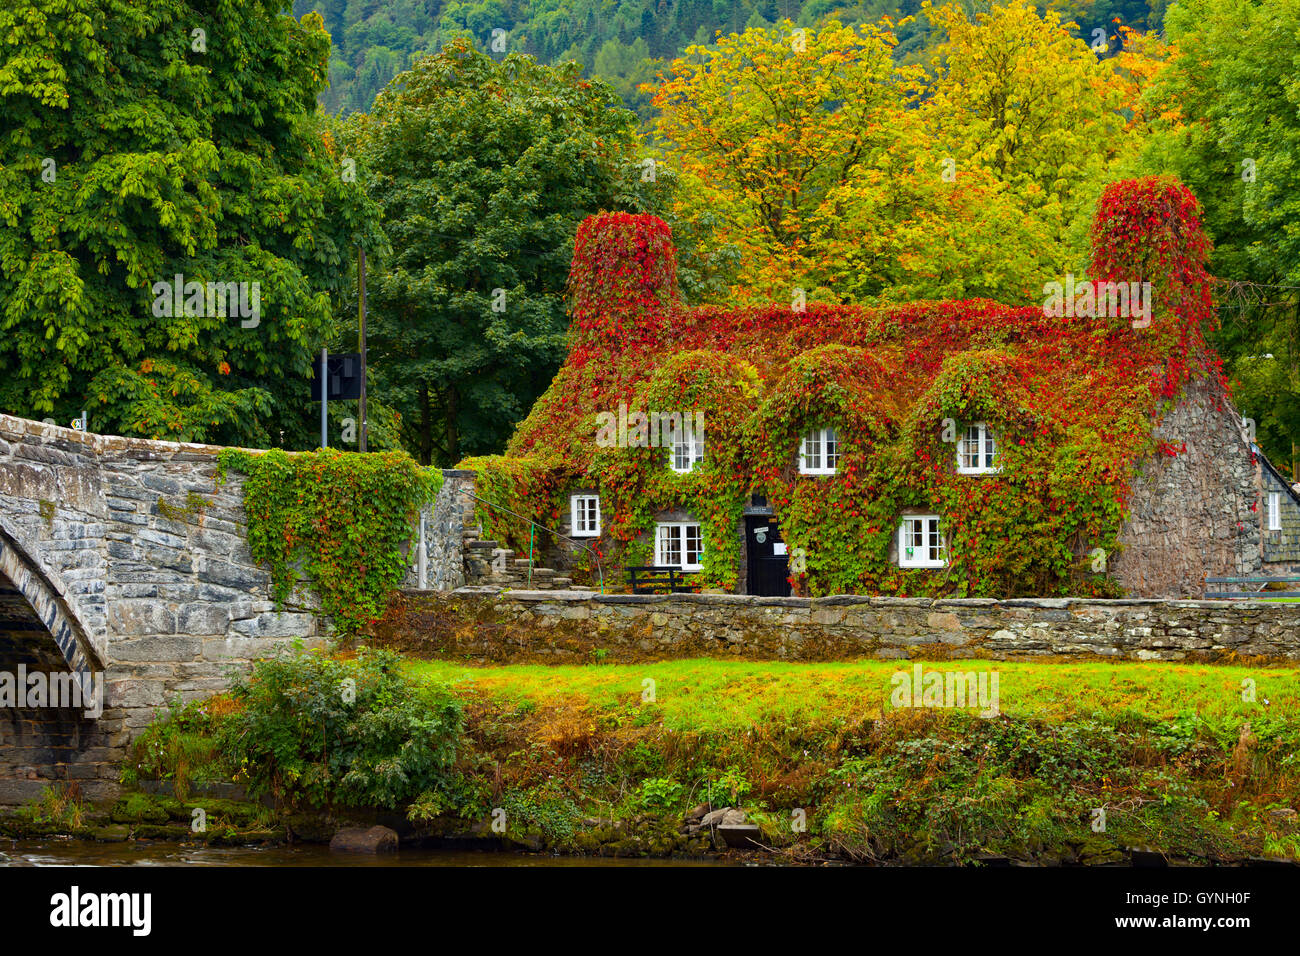 L'automne arrive à Tu Hwnt J'r Bont de thé à Llanrwst sur les rives de la rivière Conwy. L'automne commence le rougissement de la puce qui transforme un rouge vibrant pendant ce temps de l'année. Banque D'Images